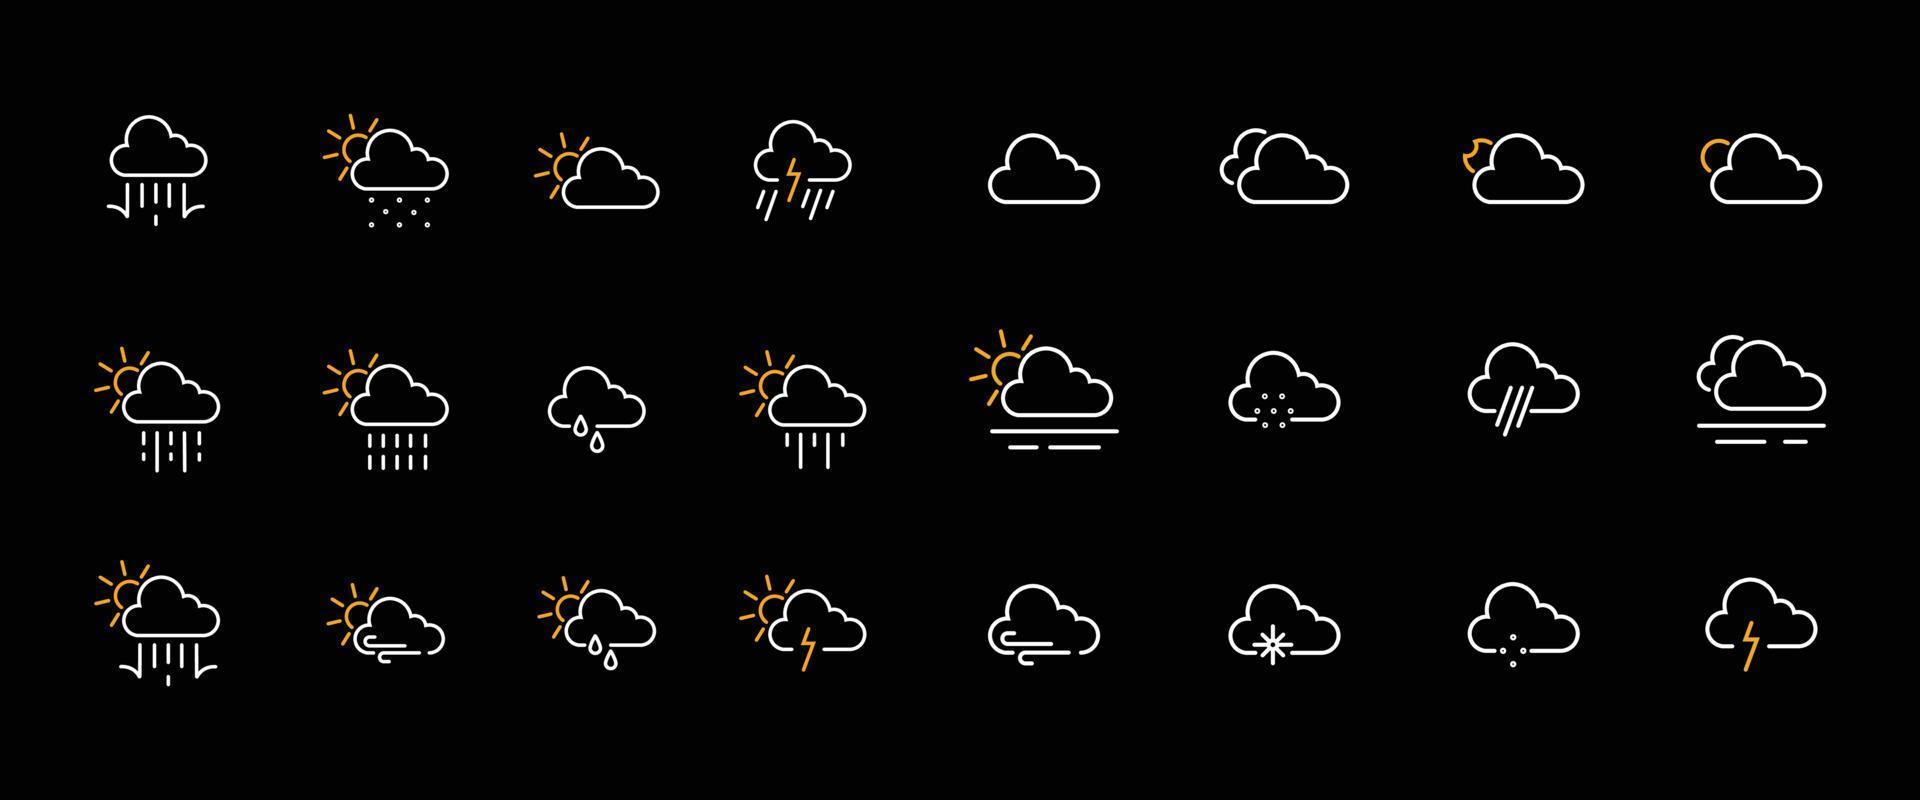 iconos nublados para el pronóstico del tiempo vector